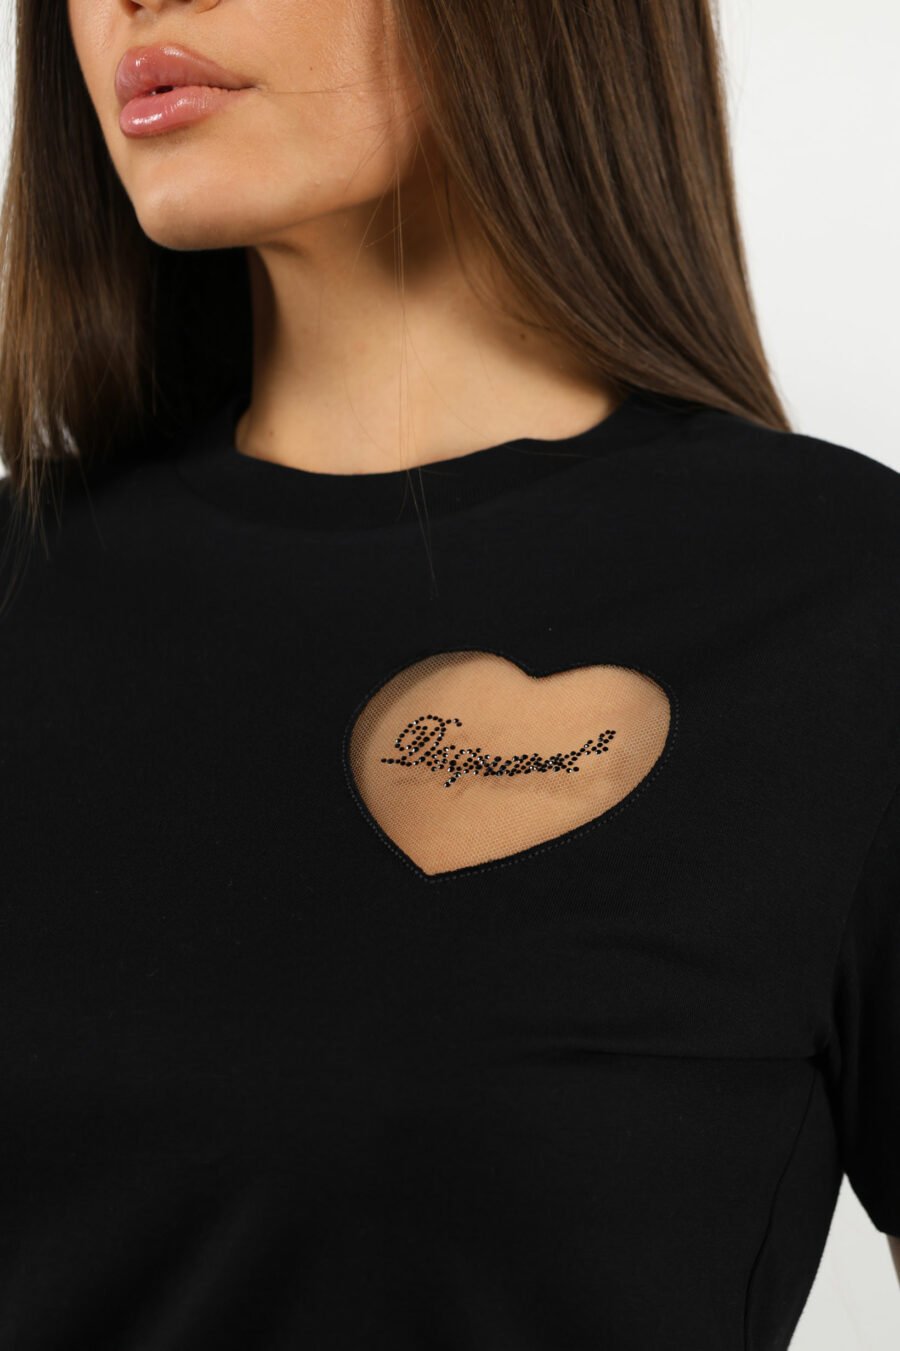 Camiseta negra con logo corazón transparente - 109775